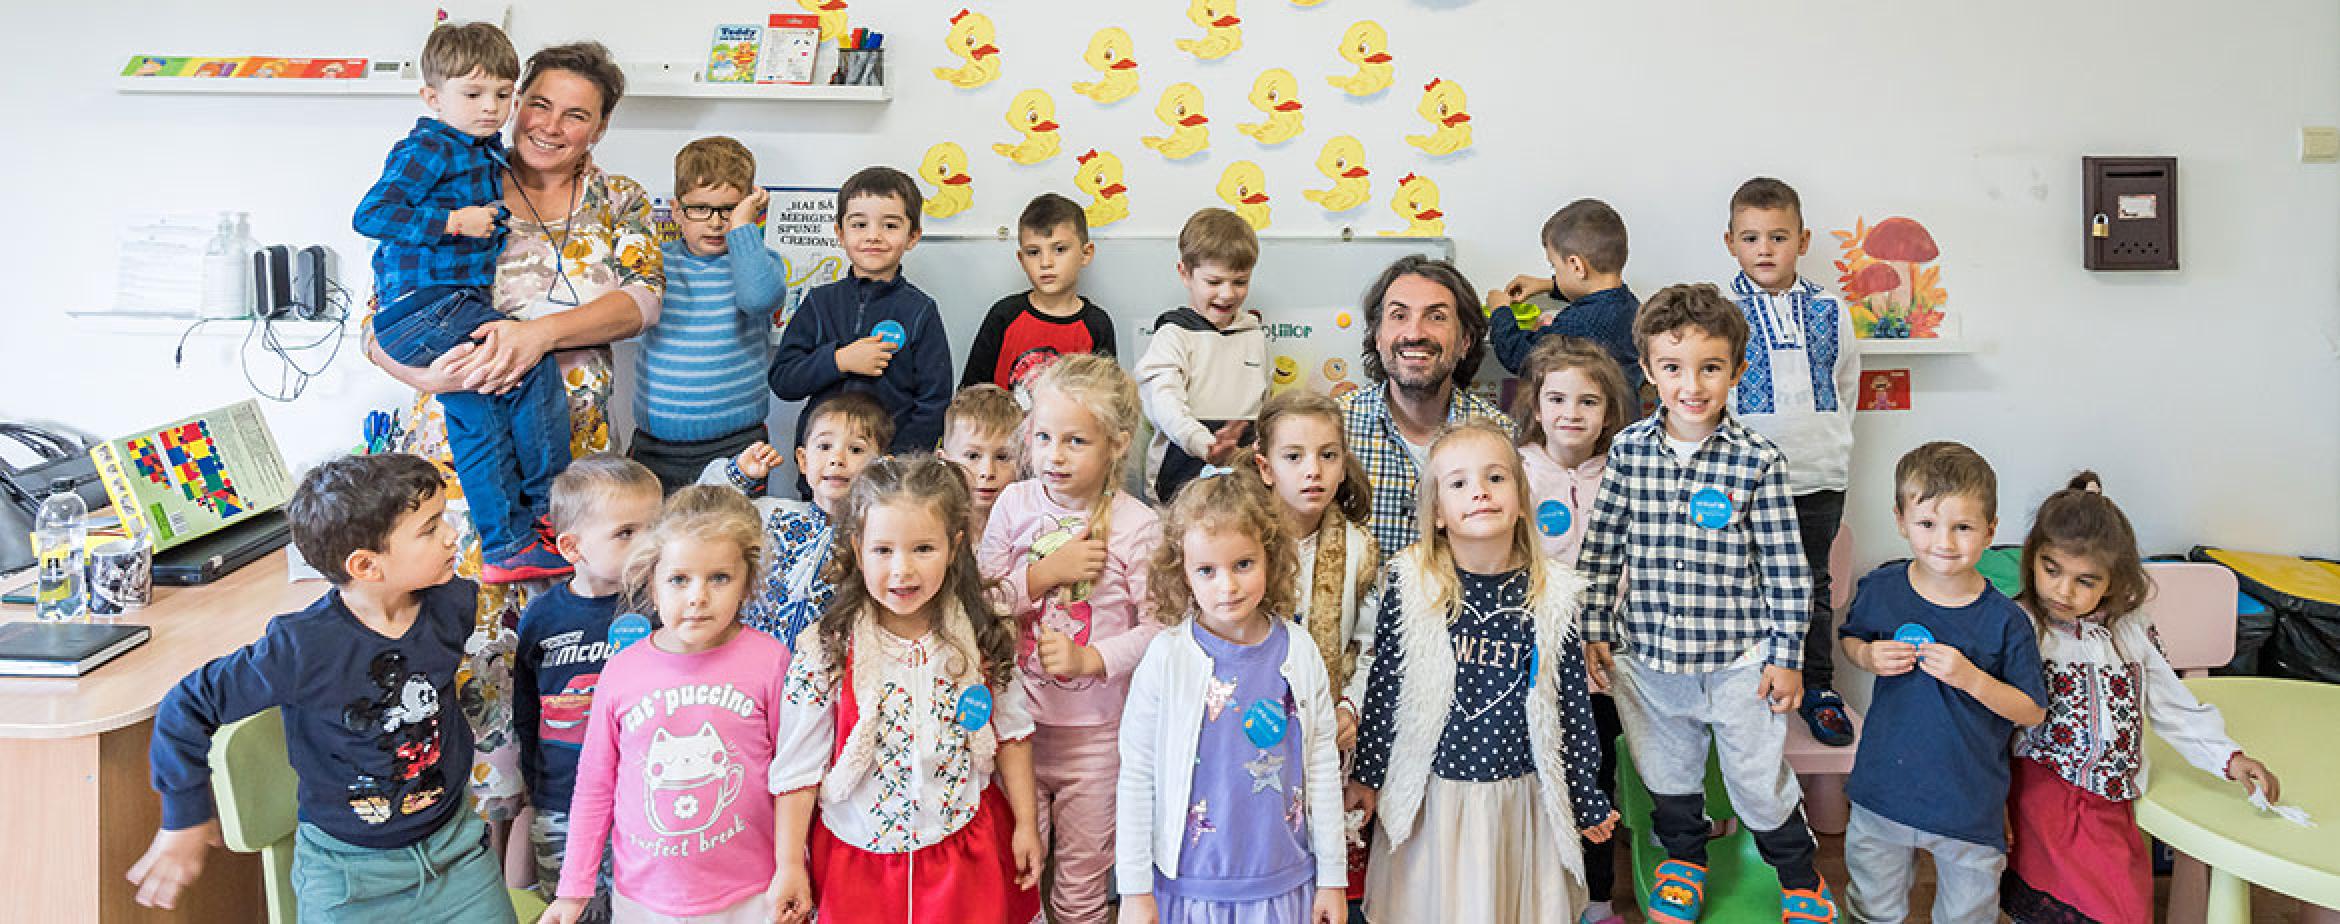 JYSK și UNICEF în vizită la Brașov, în cadrul programului “România pentru fiecare copil” 